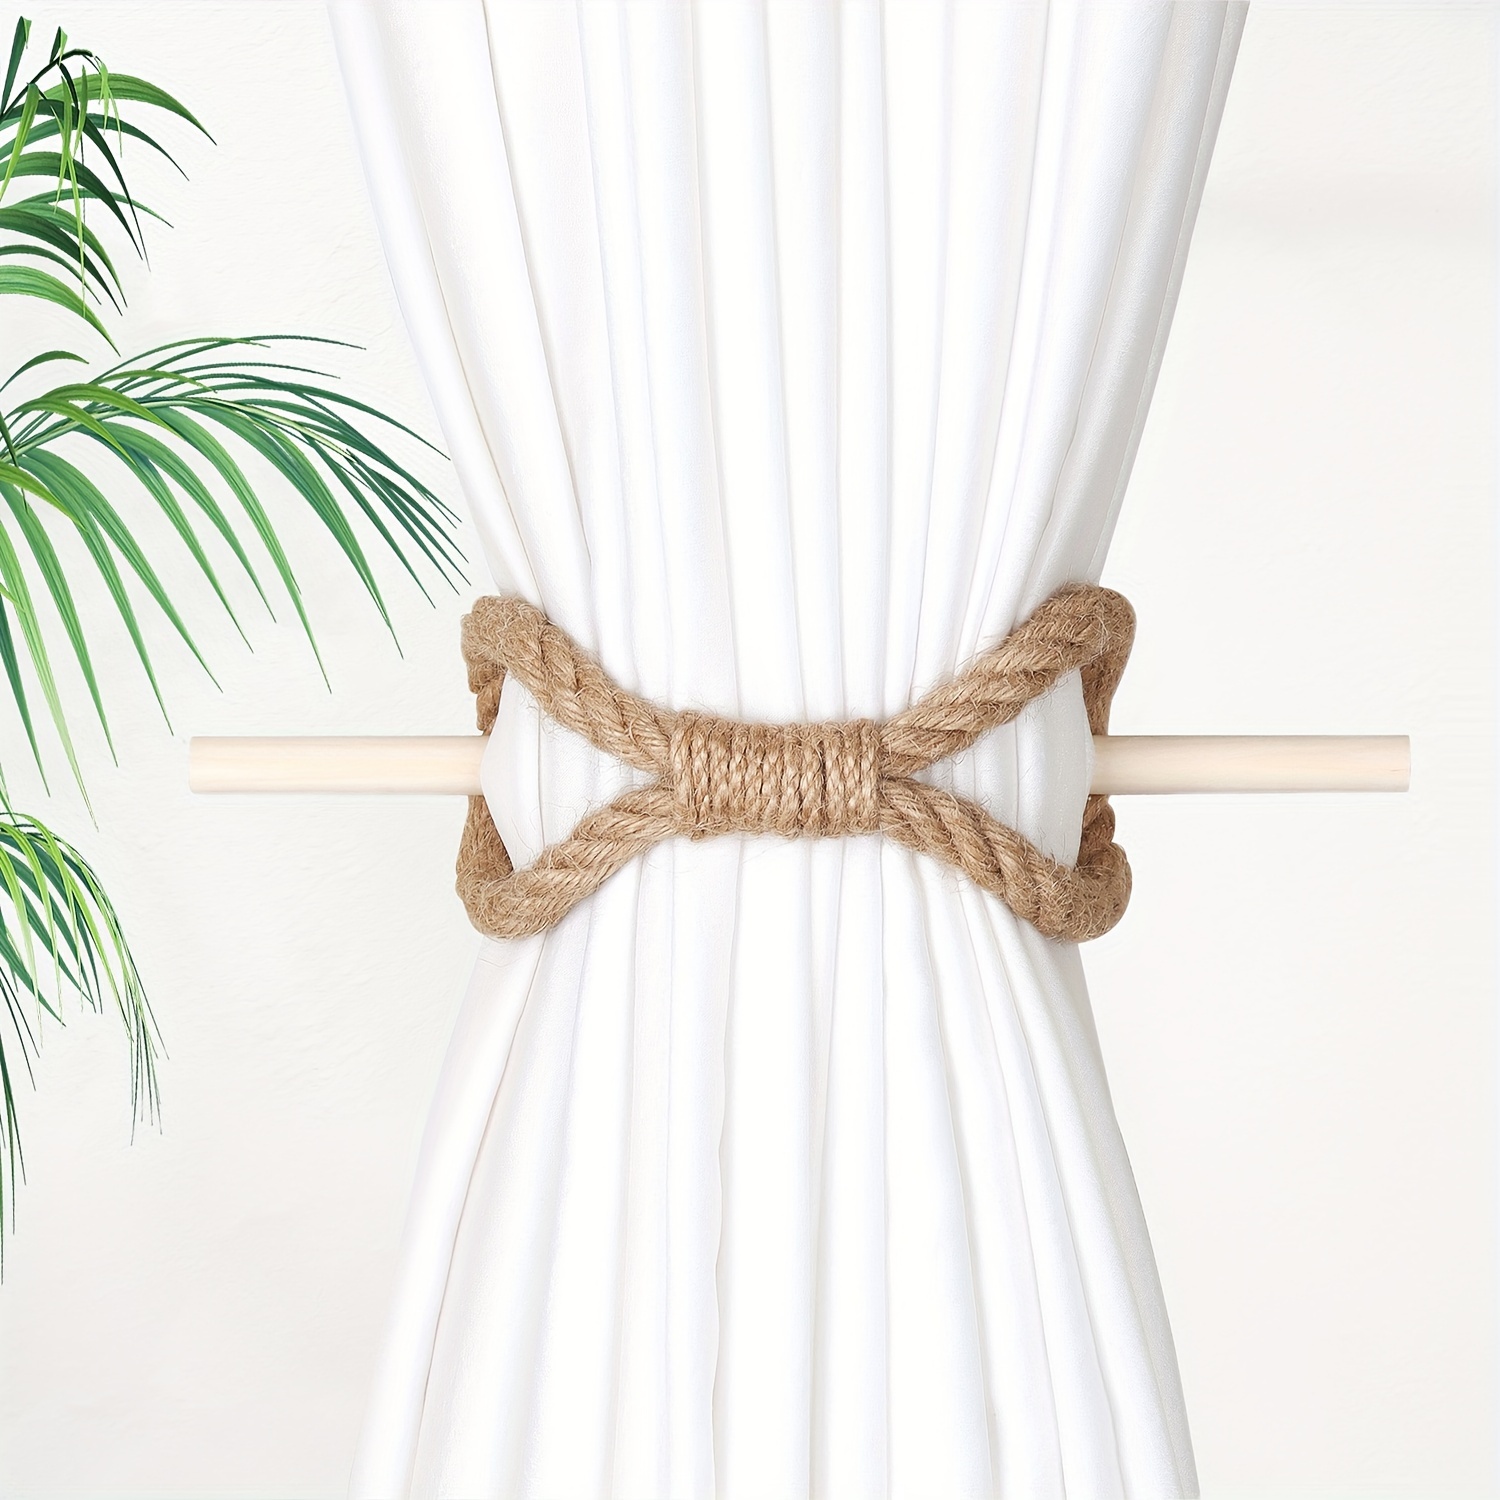 2 alzapaños de cortina de cuerda de algodón con palo de madera